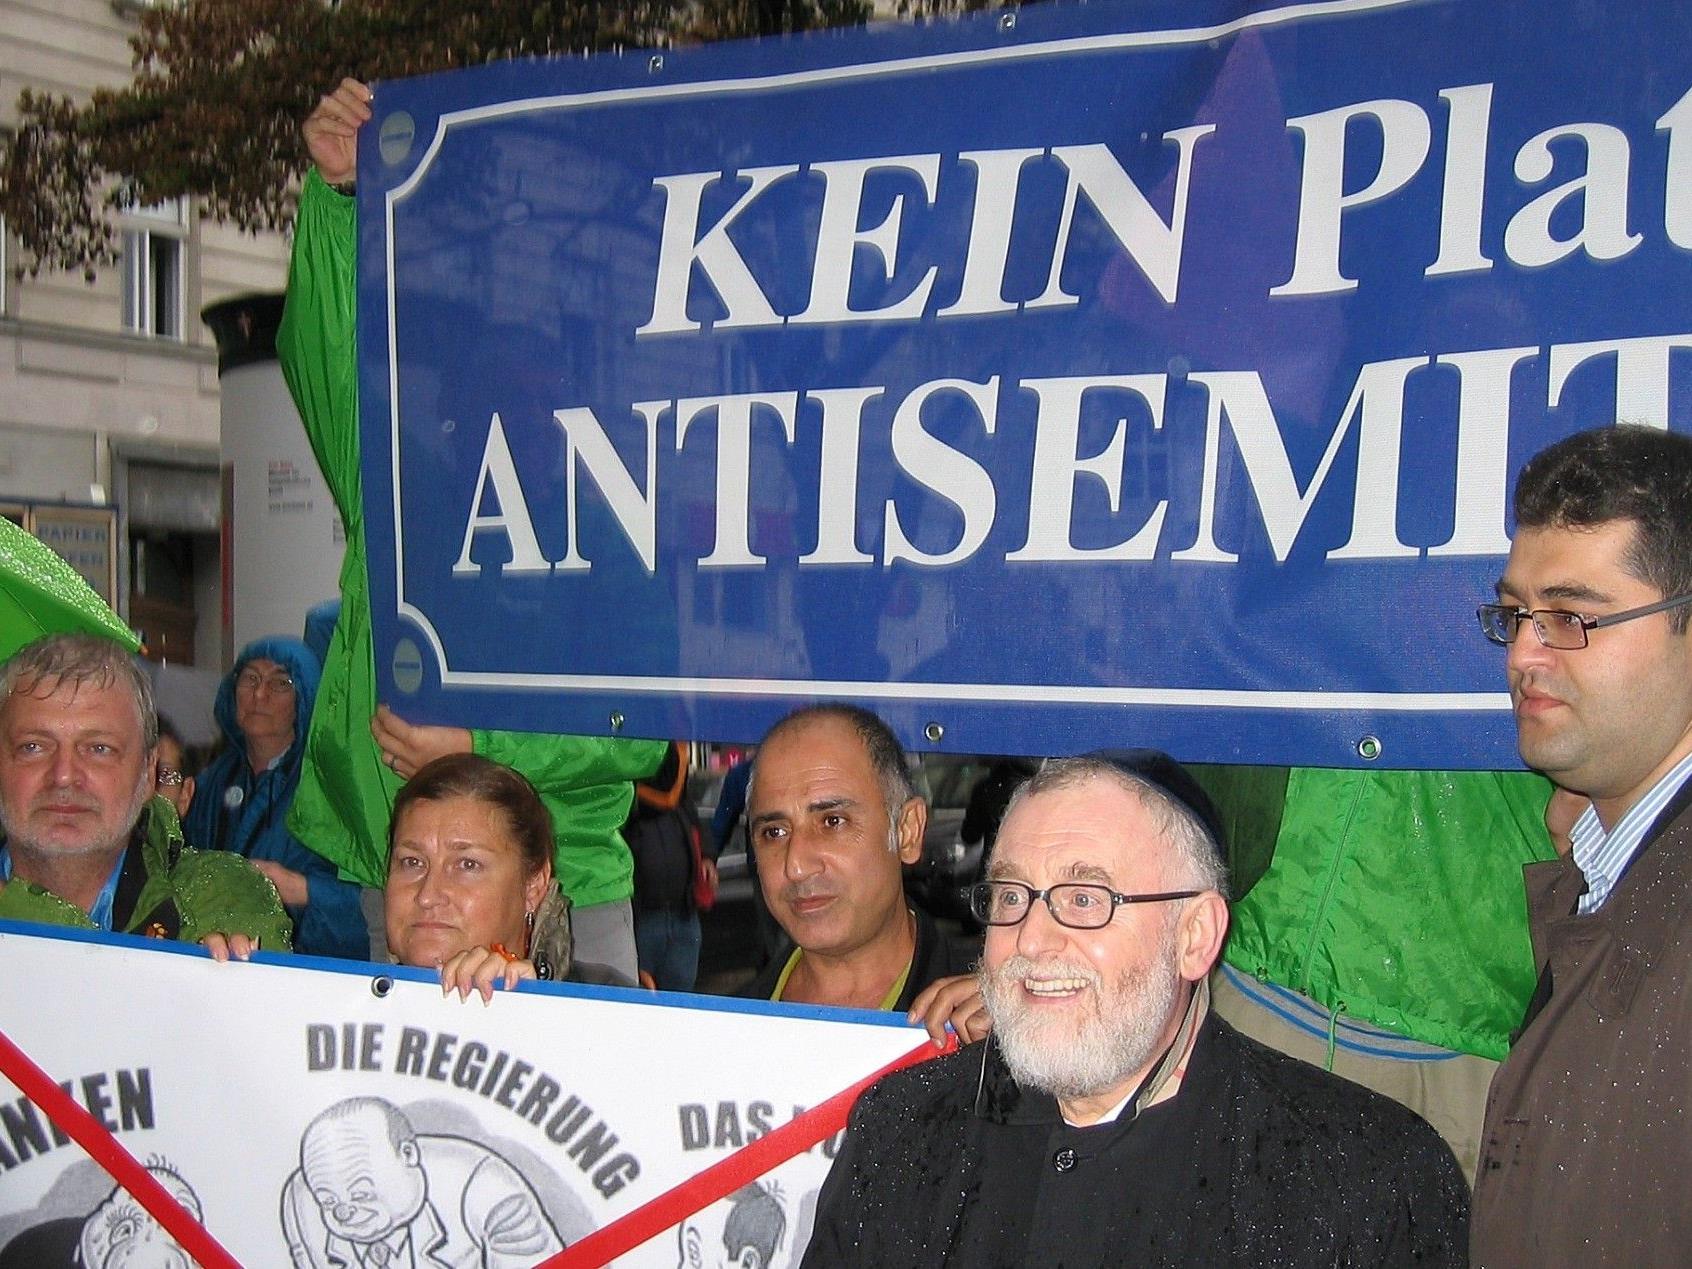 "Kein Platz für Antisemetismus" lautete die Aussage des Flashmobs am Wiener Schwedenplatz.